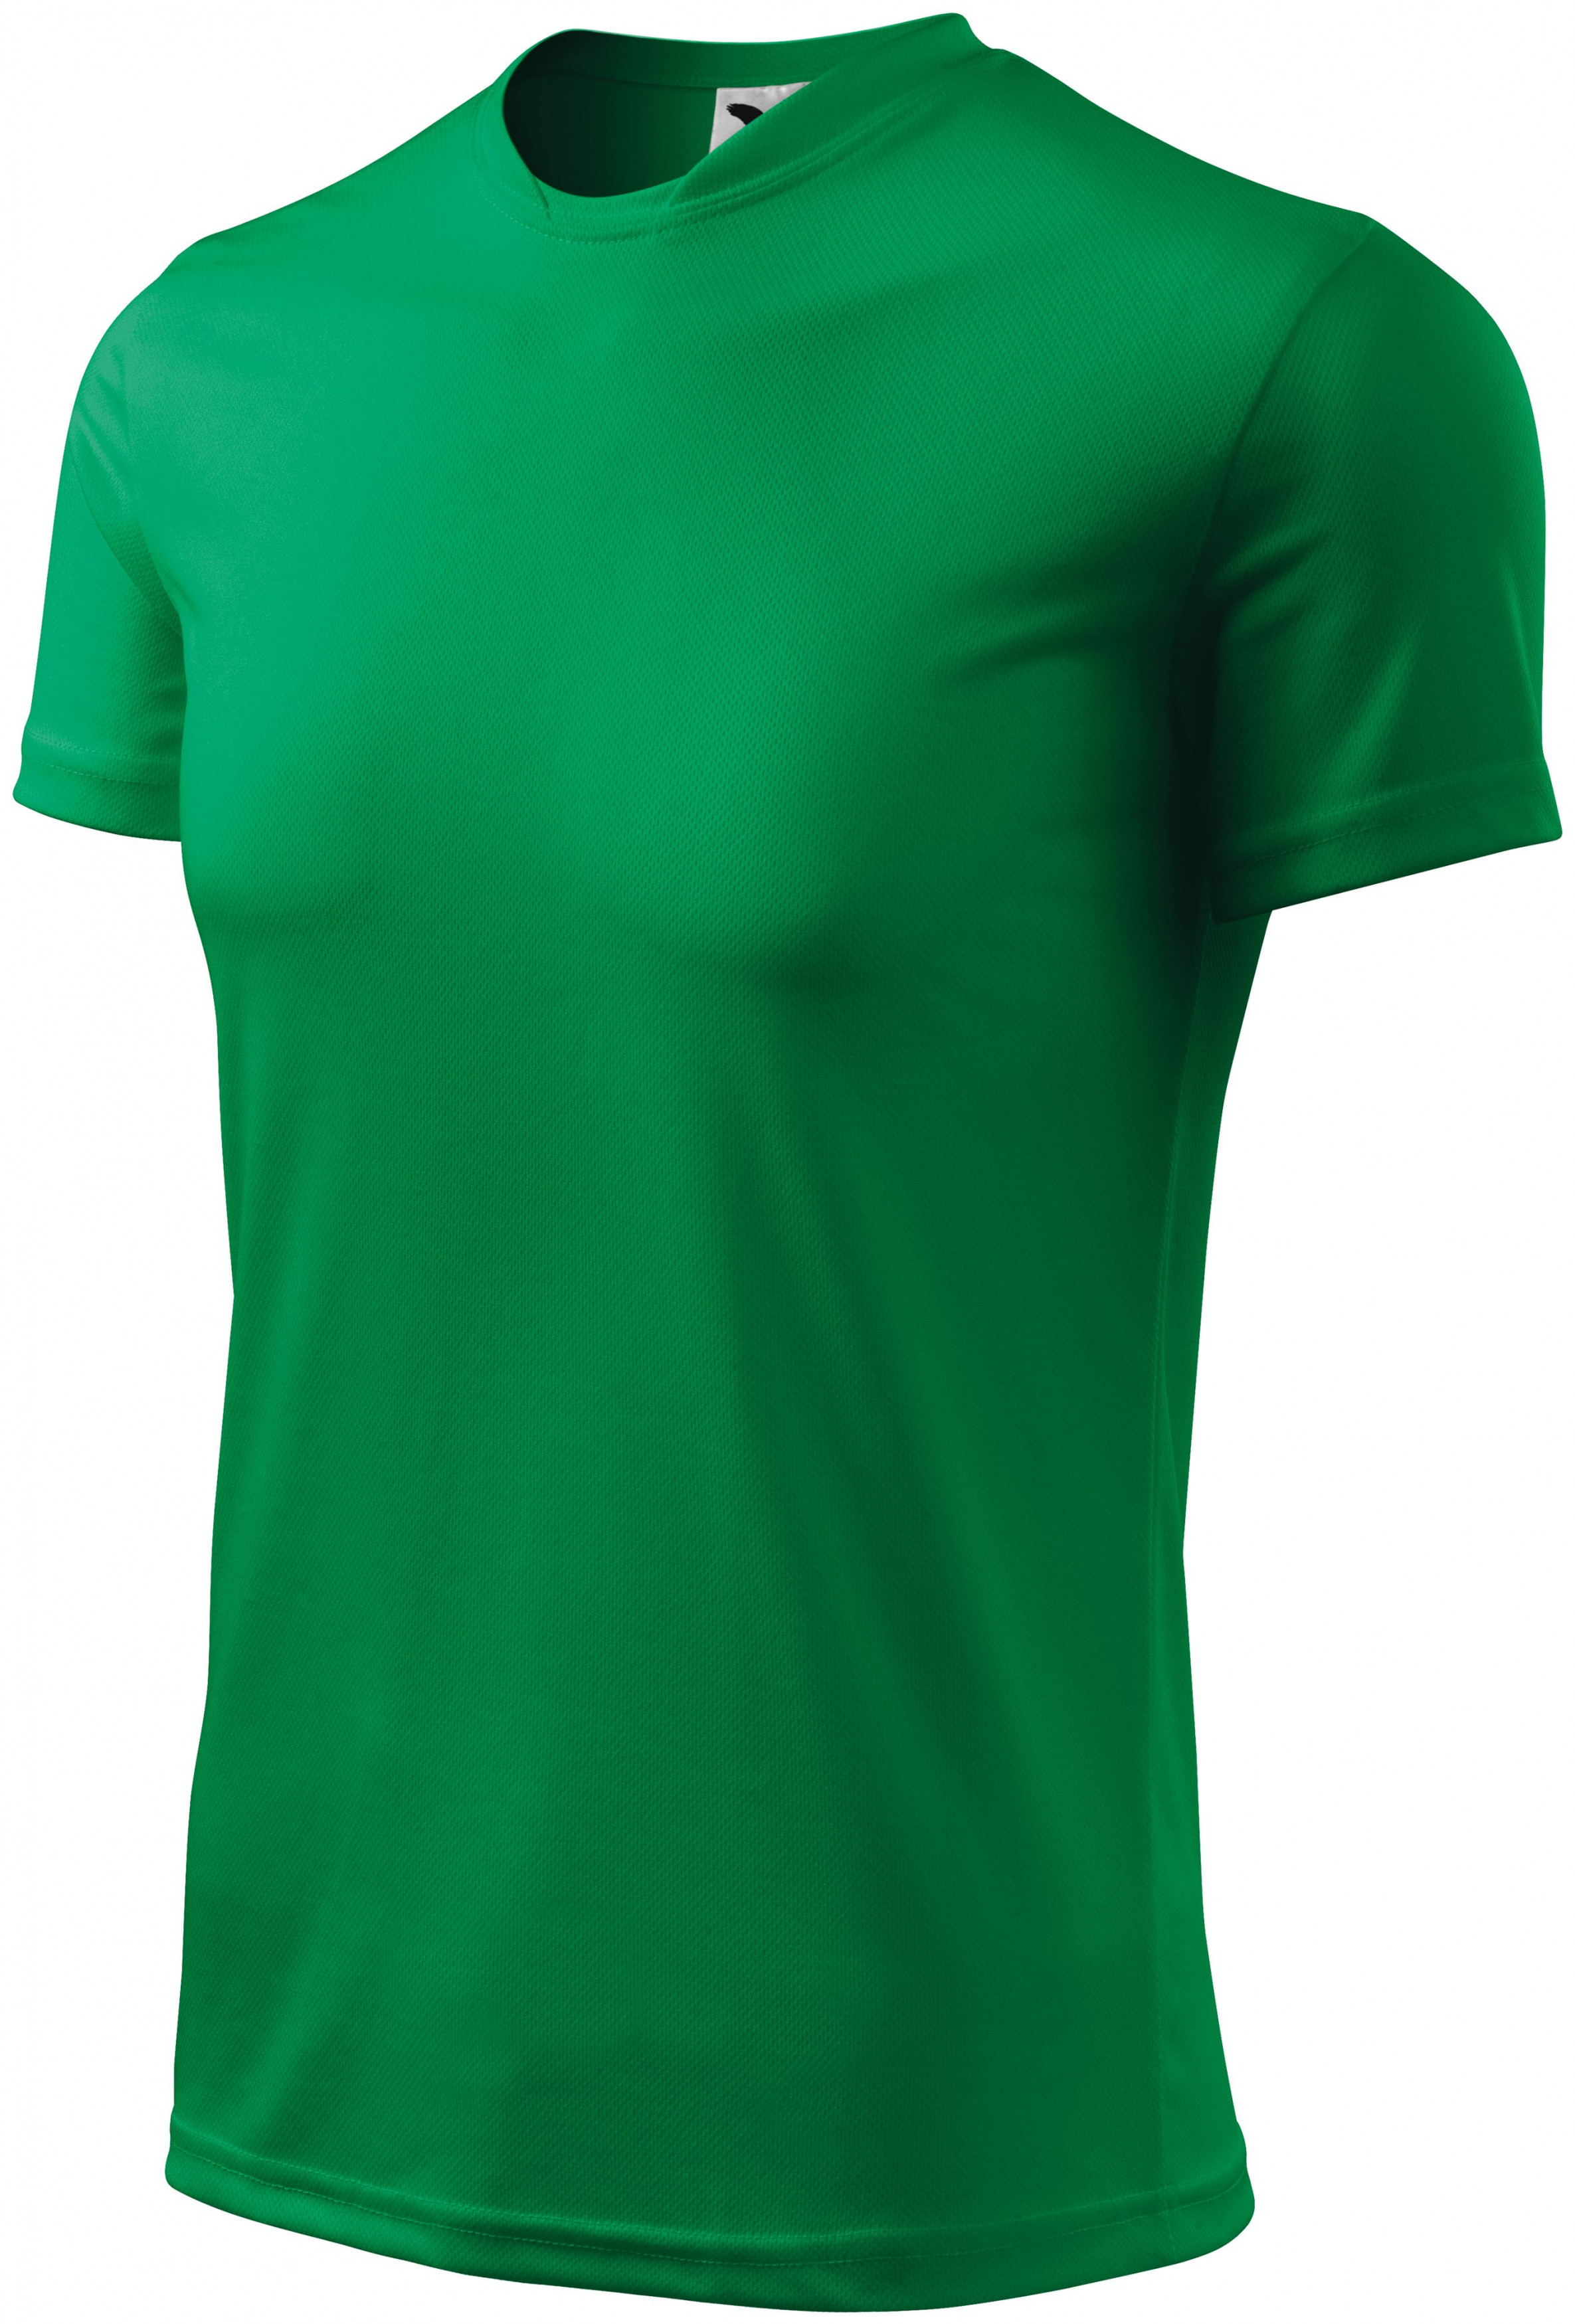 Športové tričko detské, trávová zelená, 134cm / 8rokov